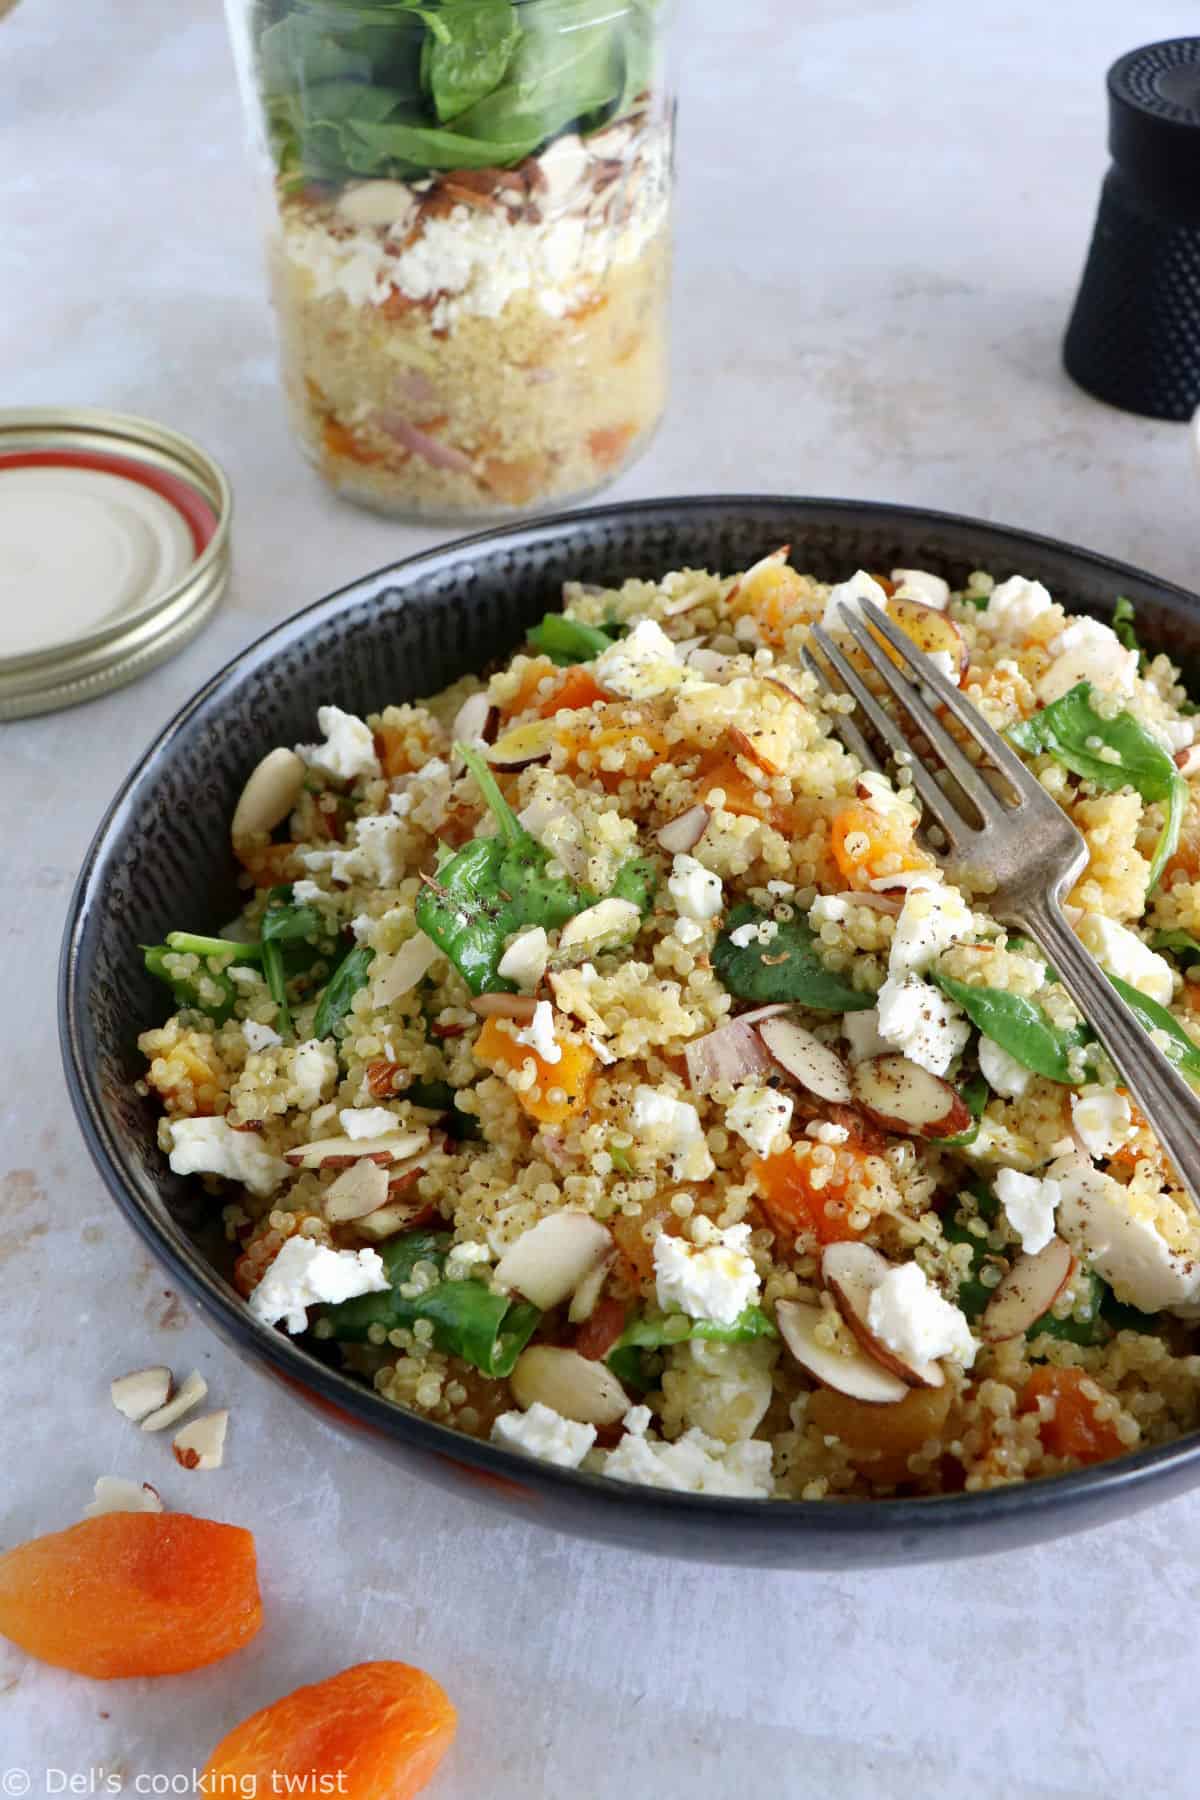 Plongez dans les mille saveurs de cette salade de quinoa, abricots et feta, agrémentée d'une vinaigrette citronnée au curry.